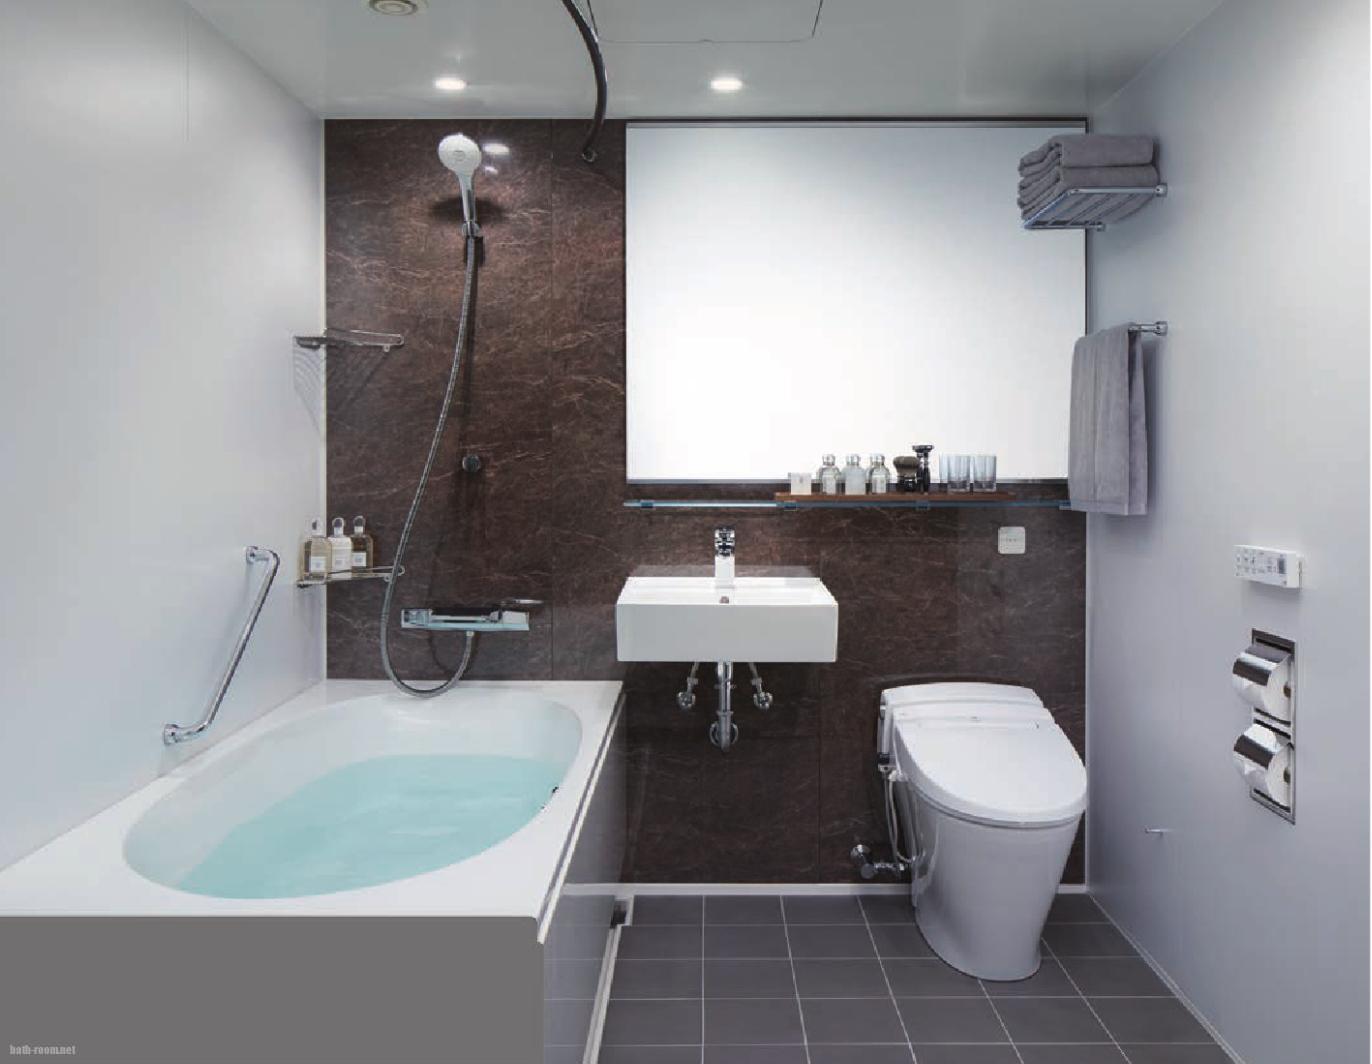 ホテルライクな3点式ユニットバス 工事パック 浴室リフォームpro